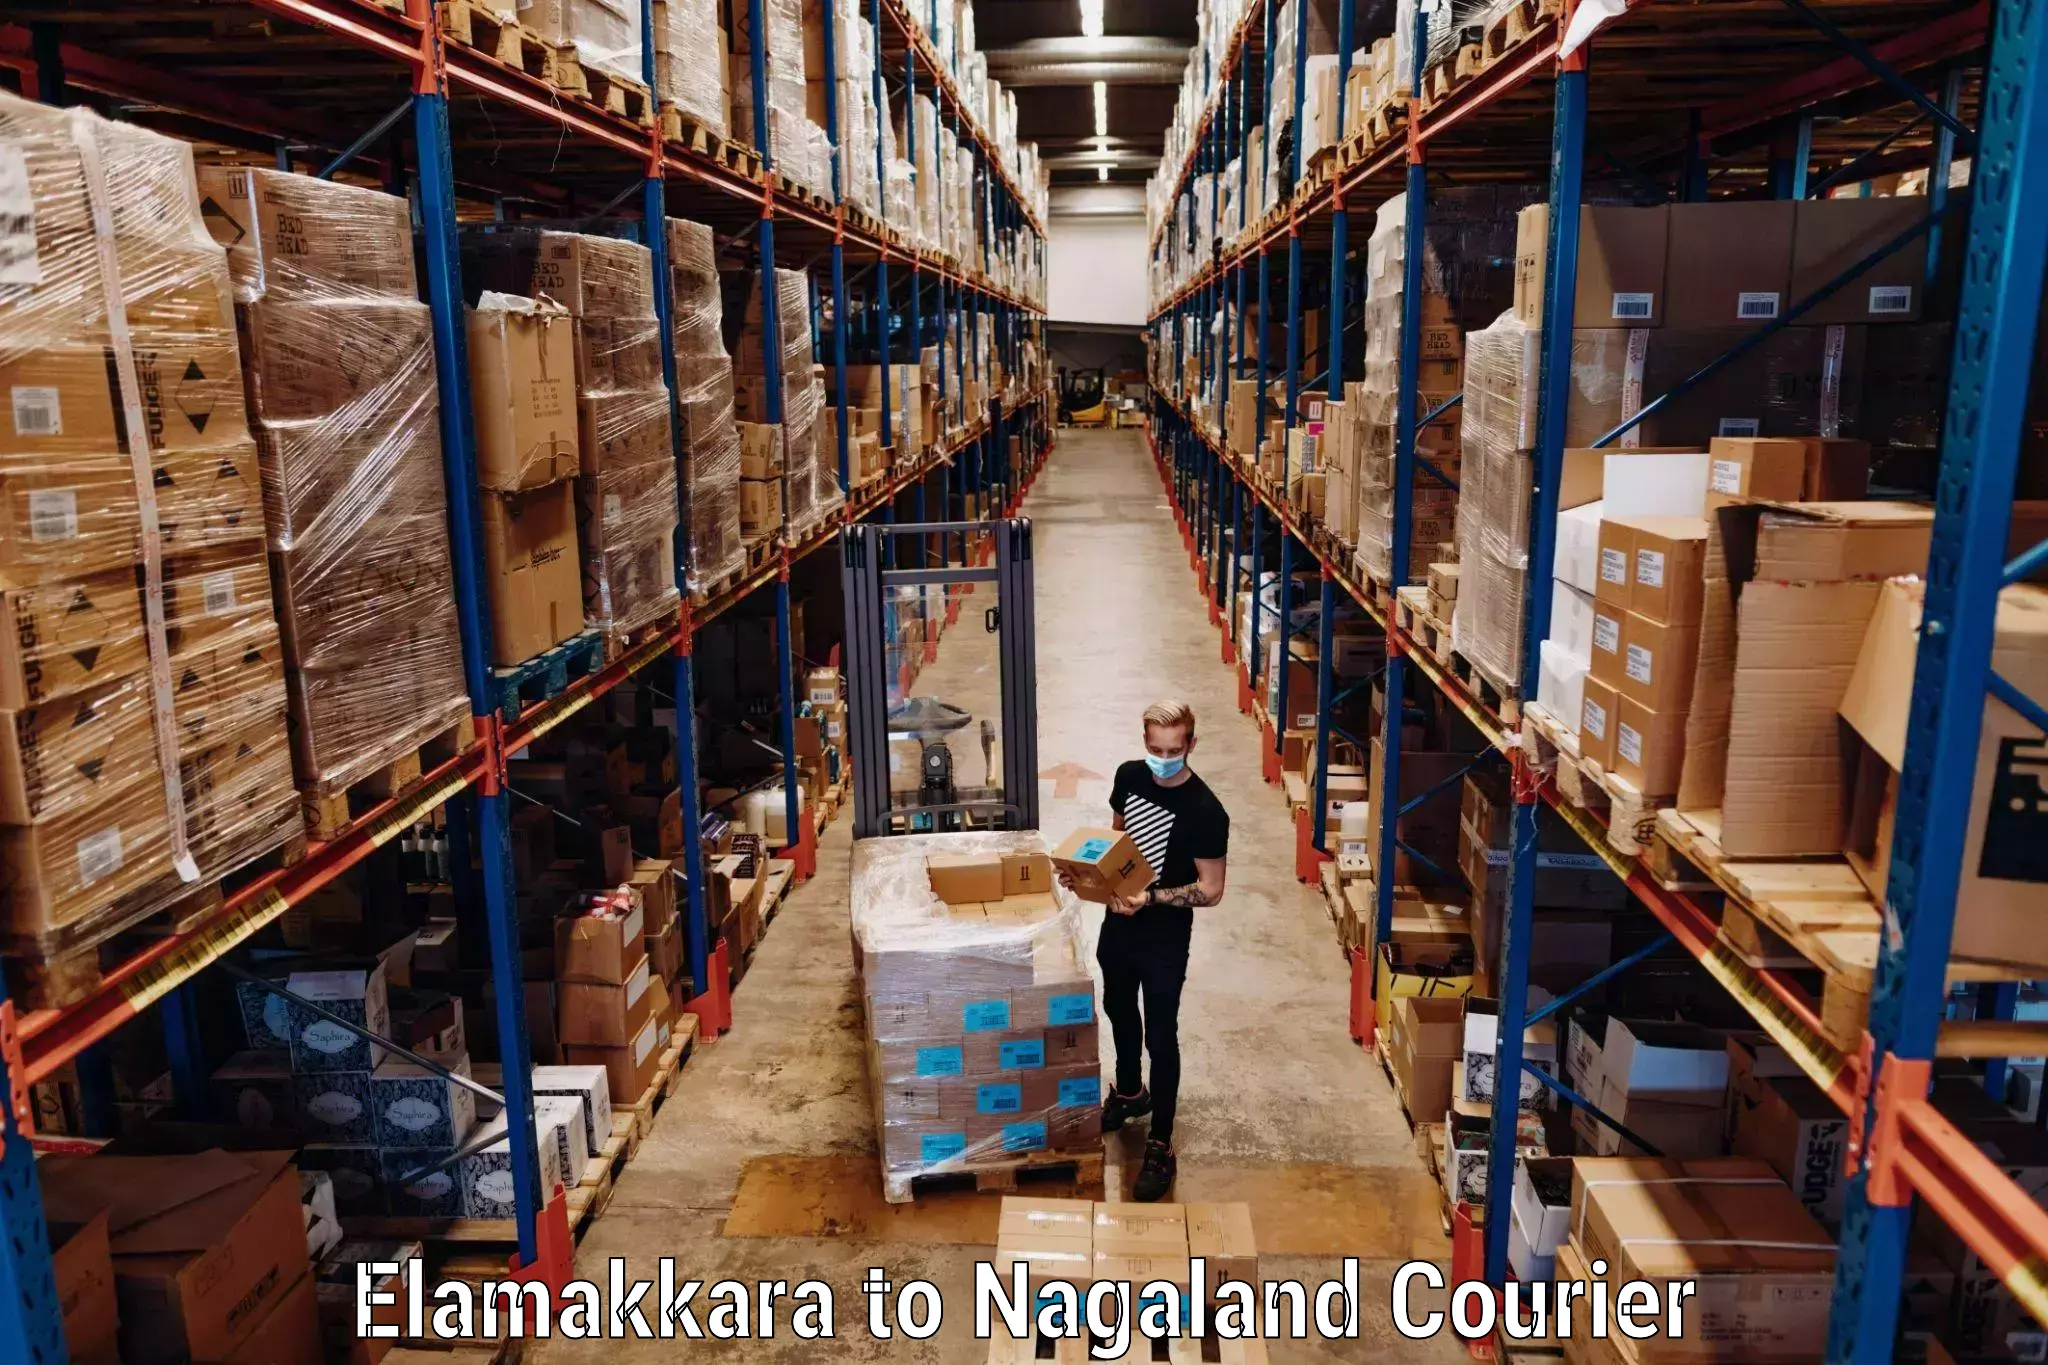 Luggage transport operations Elamakkara to Nagaland